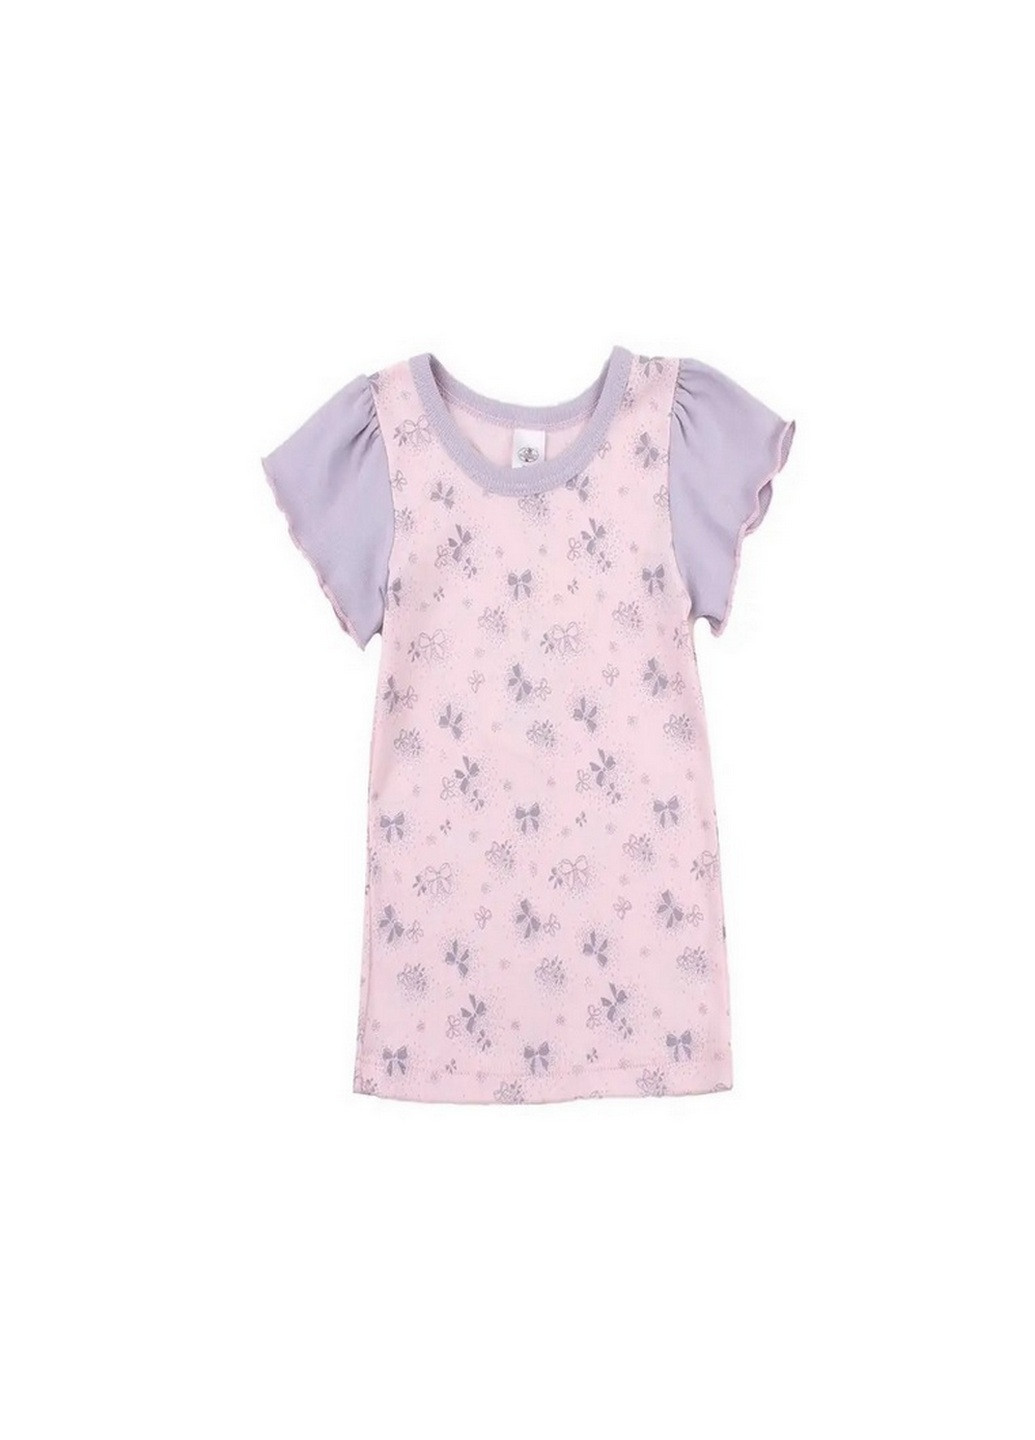 Розовая летняя футболка для девочки (бантик) Фламинго Текстиль